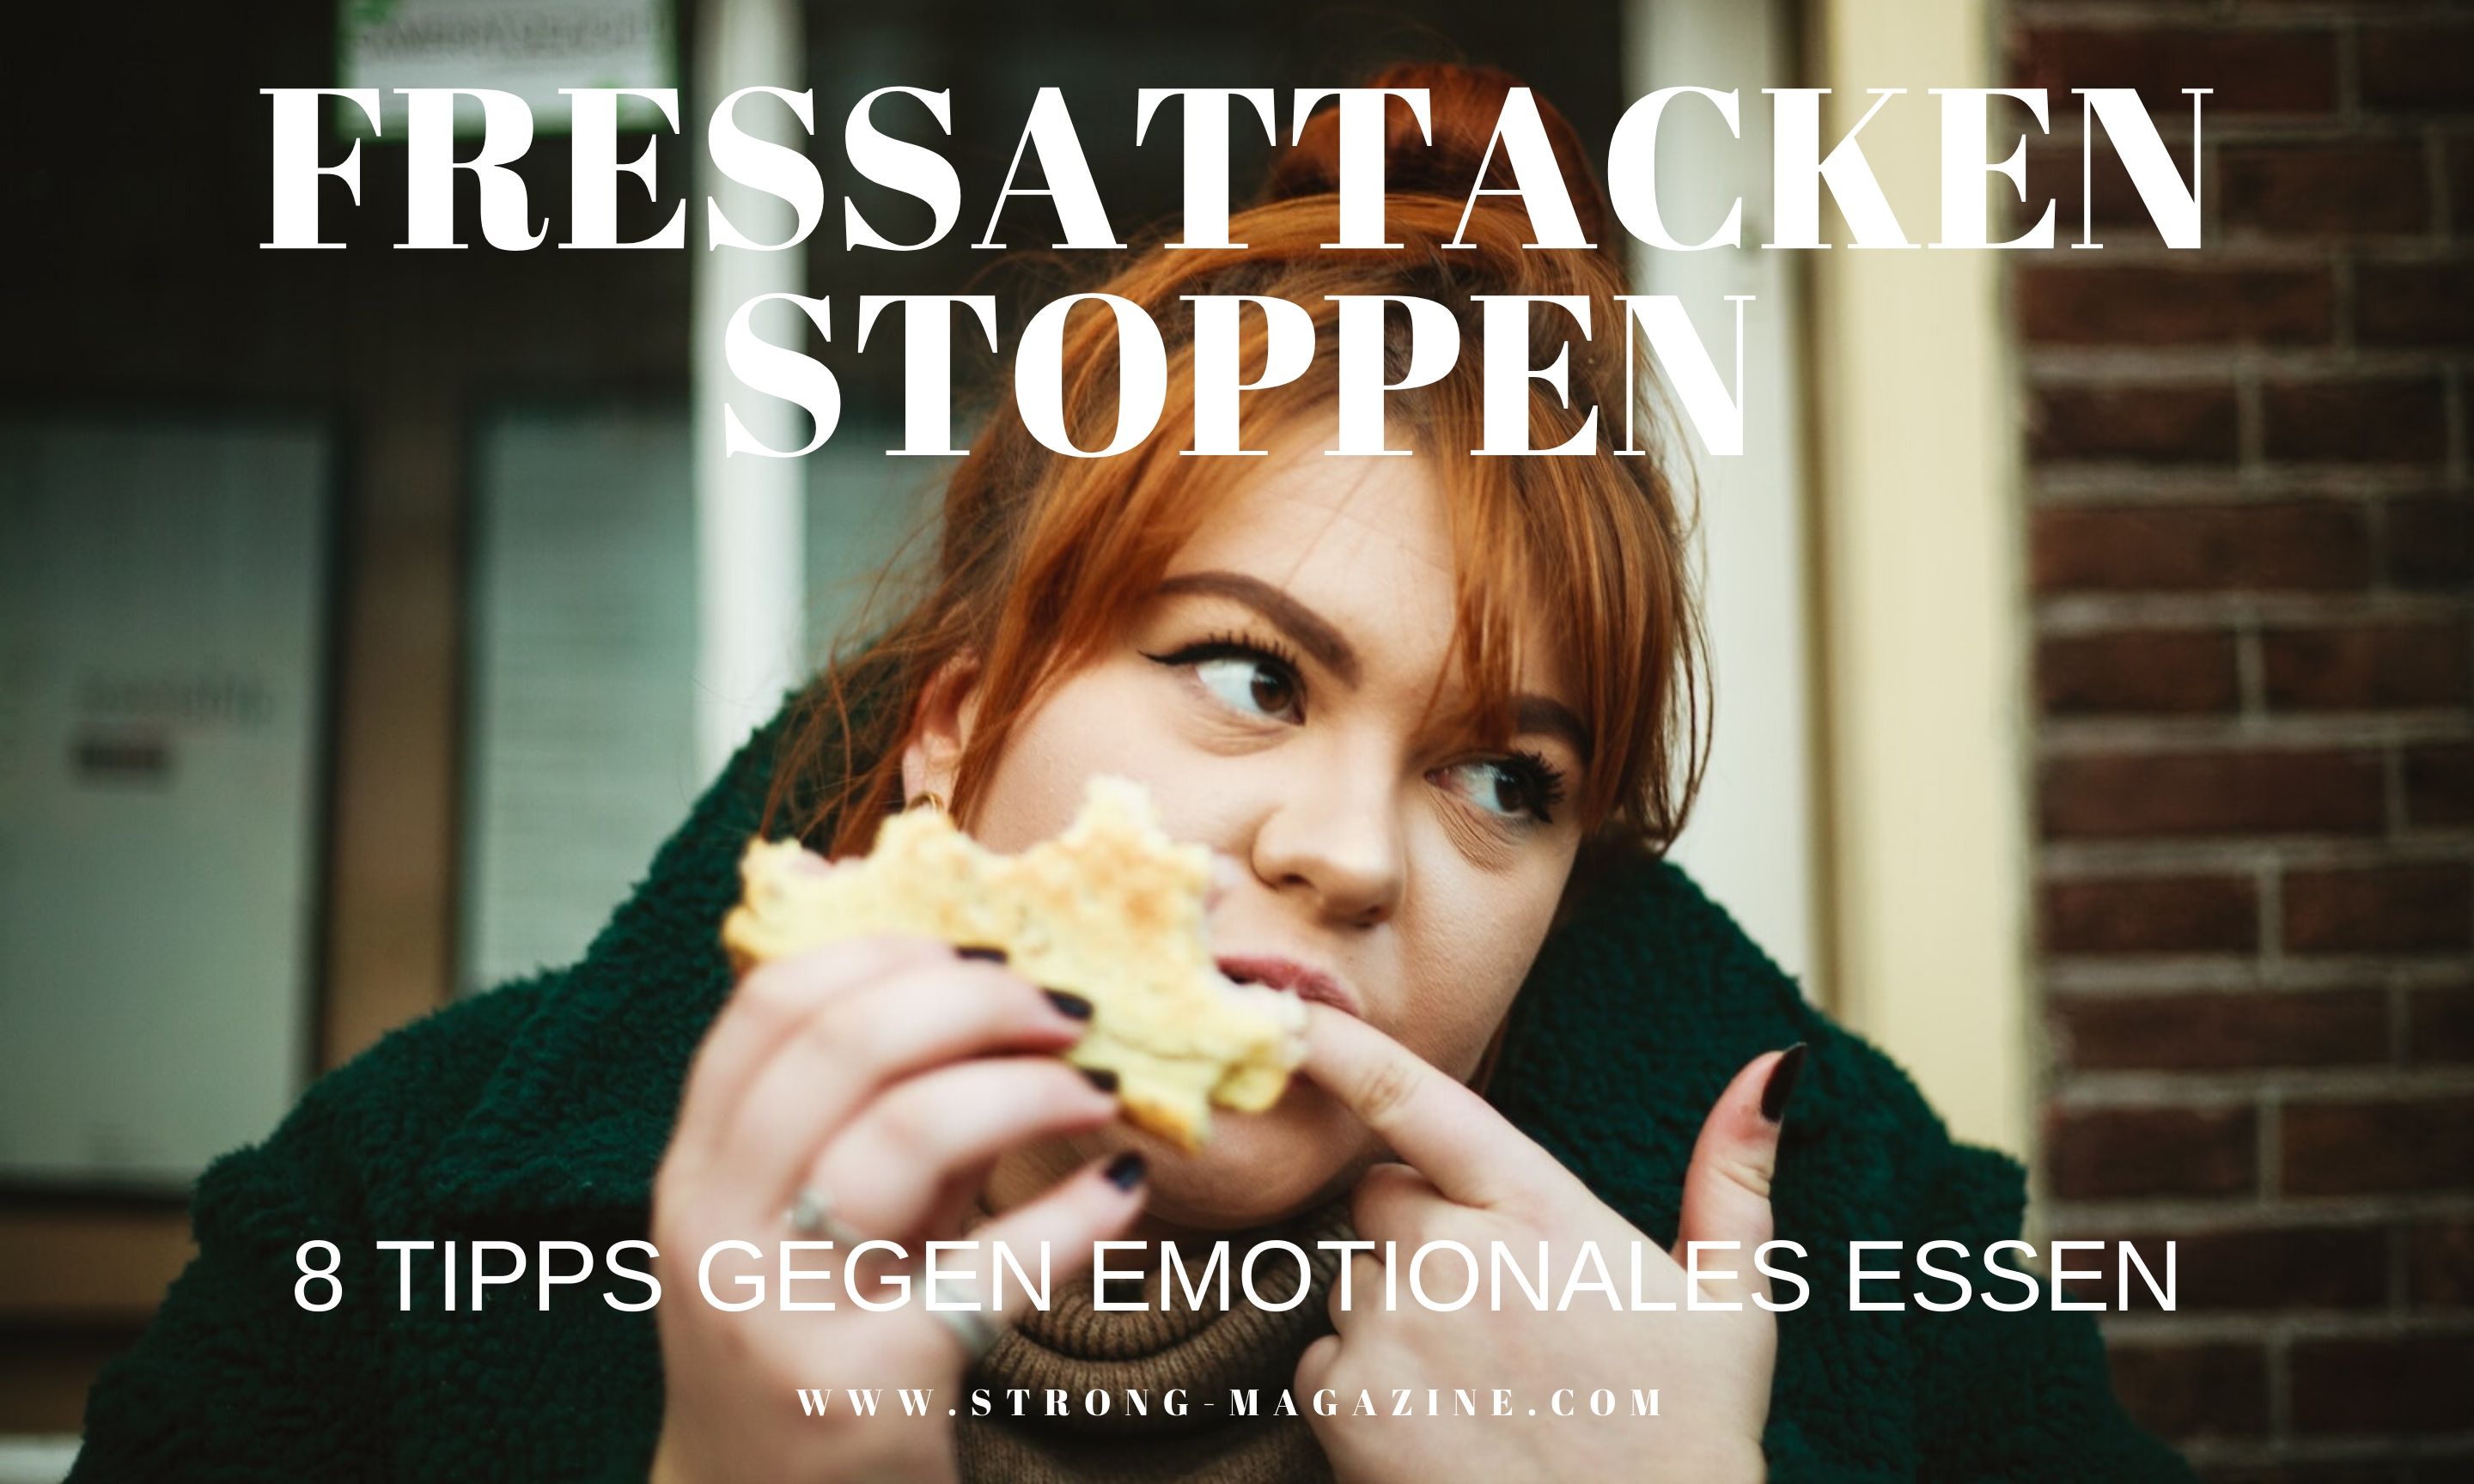 Fressattacken stoppen - Tipps gegen emotionales Essen und Heißhungerattacken